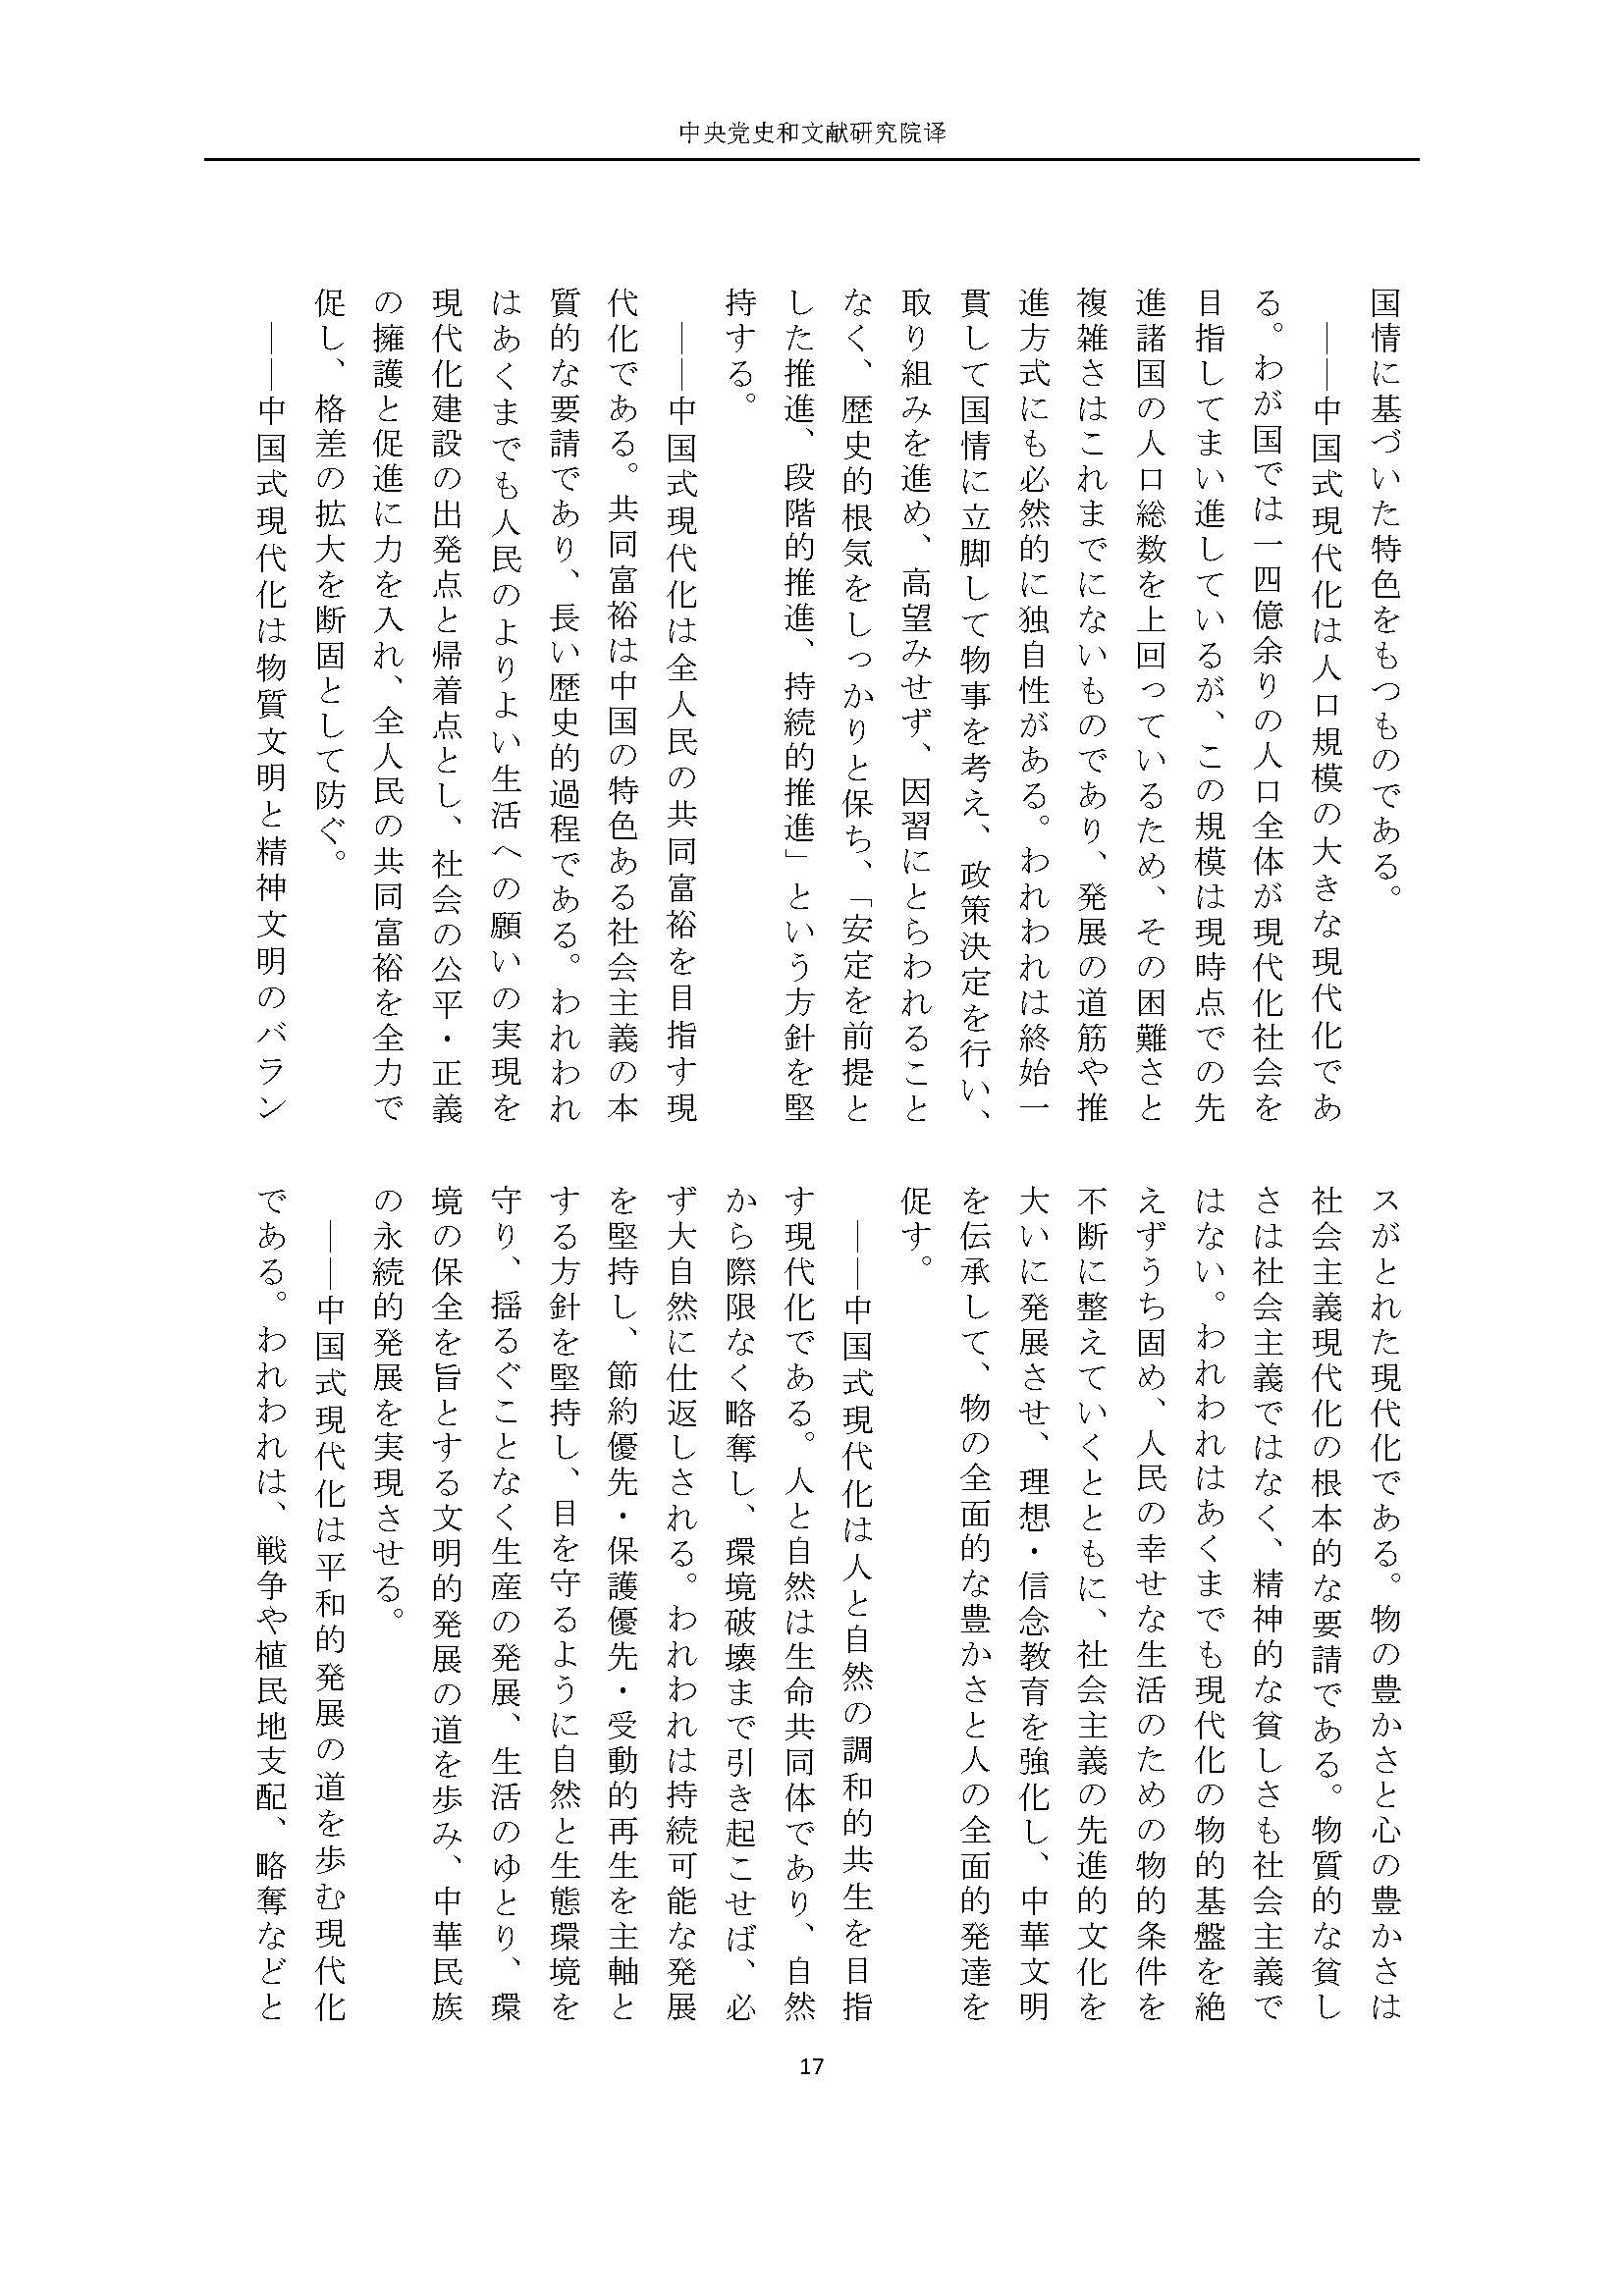 二十大报告（日文全文）_页面_18